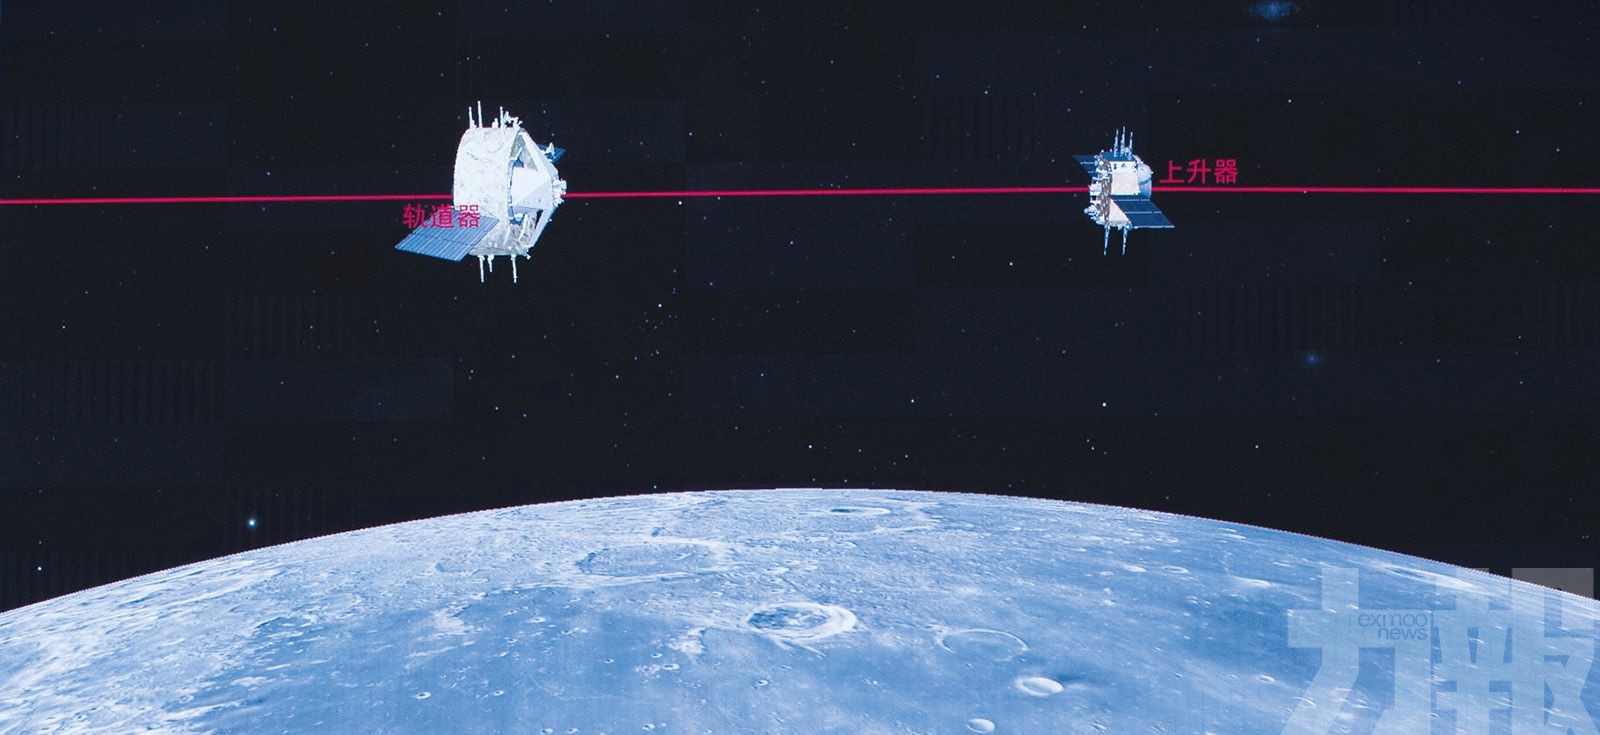 「嫦娥五號」將擇機返地球